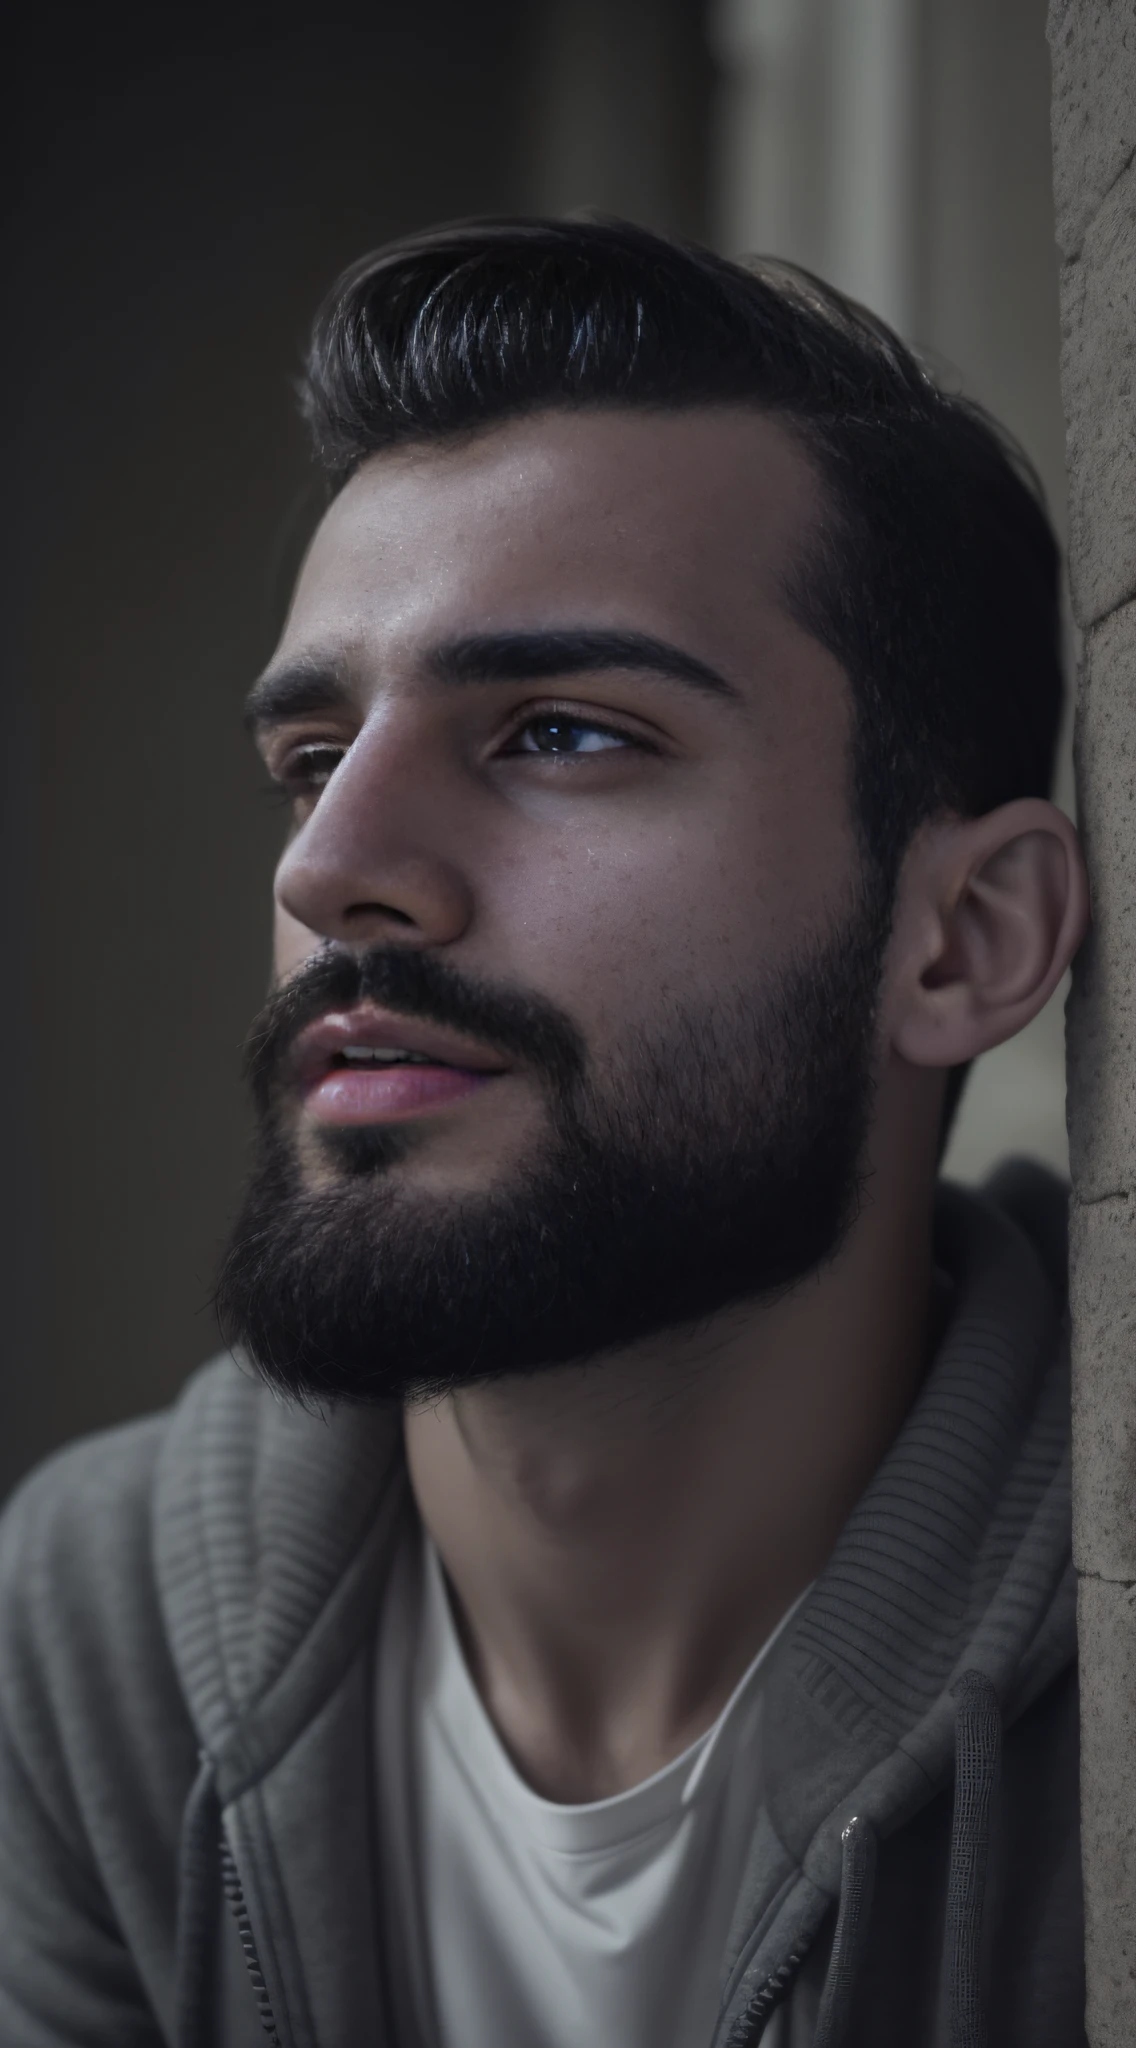 25-летний мужчина из Румынии., мужской род, бородатый, ключевая борода, модель, все тело, очень красивый, глядя в камеру, детальное изображение, UHD, 8К, хорошо освещенный, зерно пленки